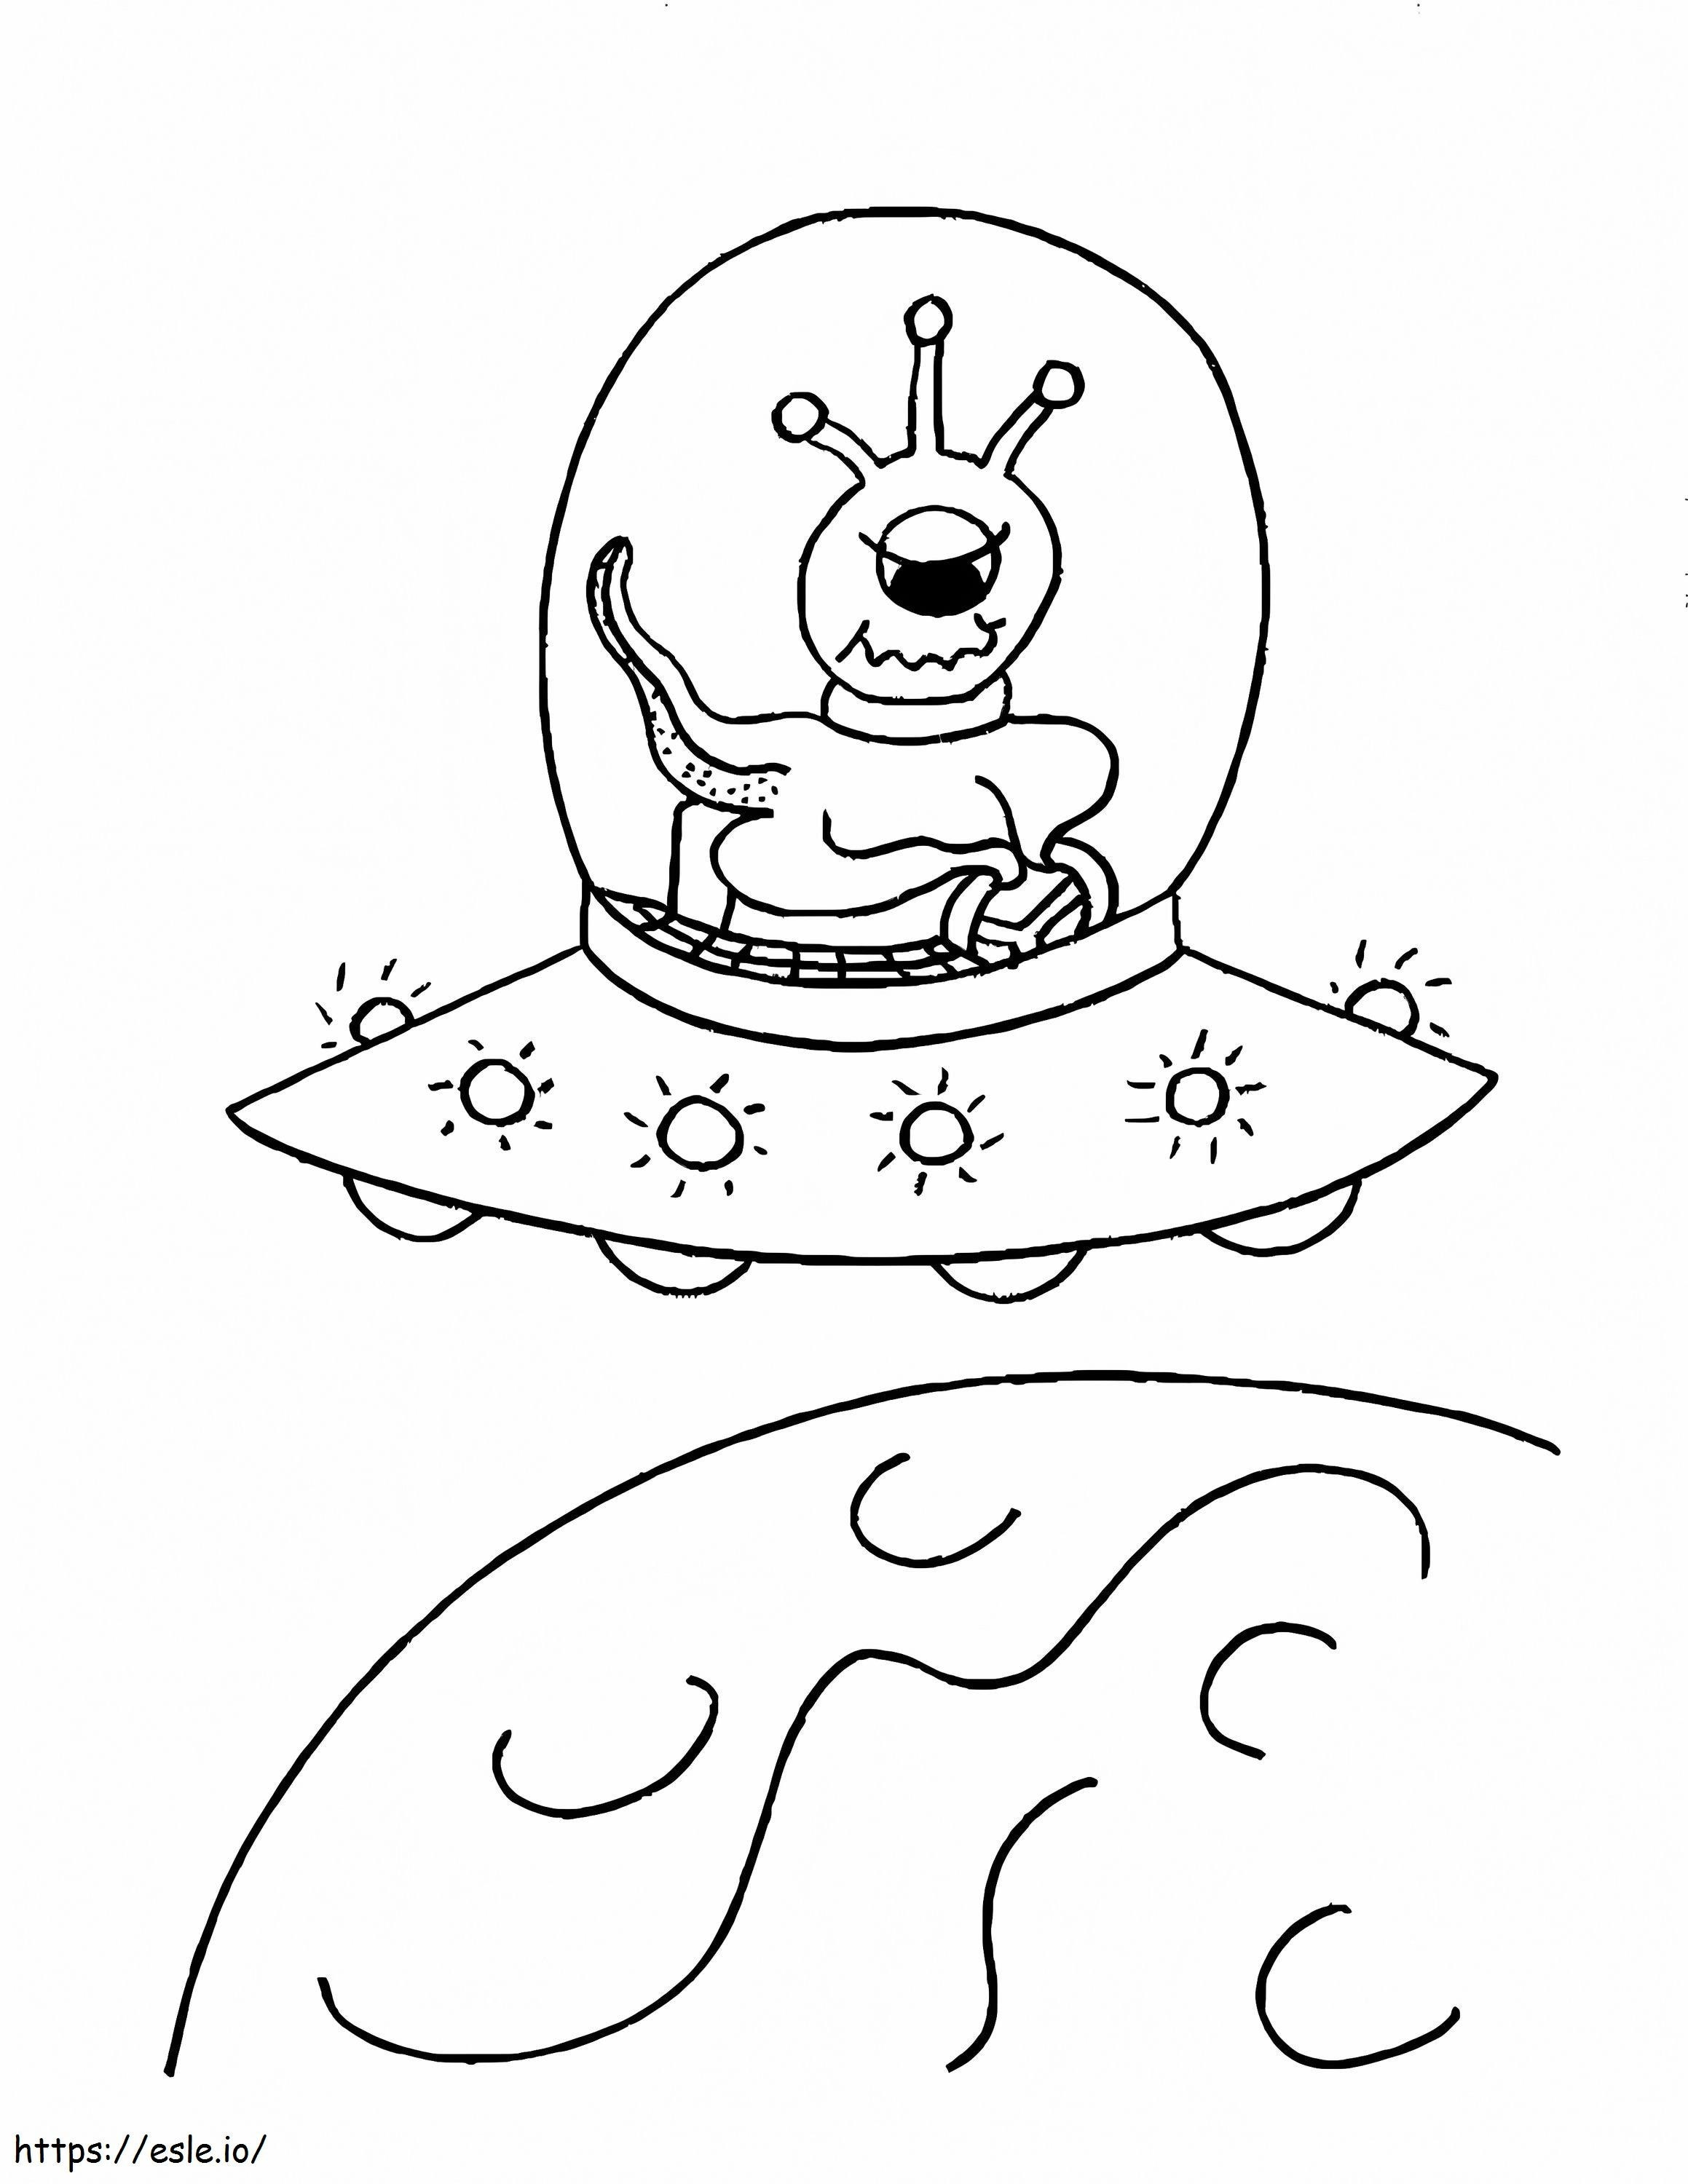 Desenho de alien no espaço para colorir para crianças